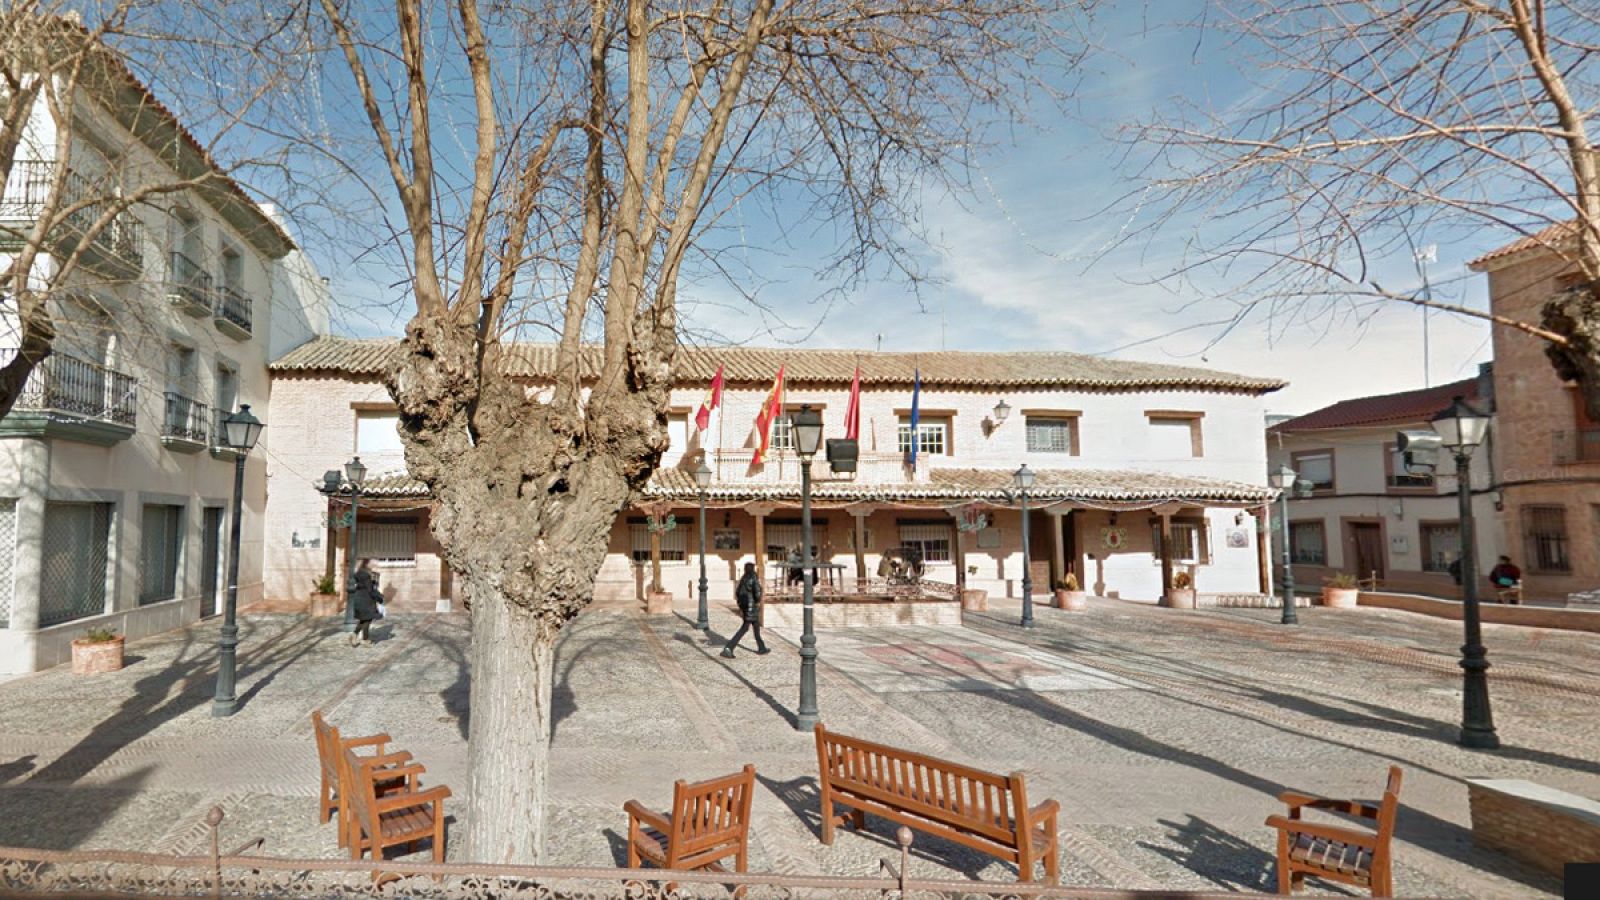 Ayuntamiento del pueblo toledano de Villafranca de los Caballeros